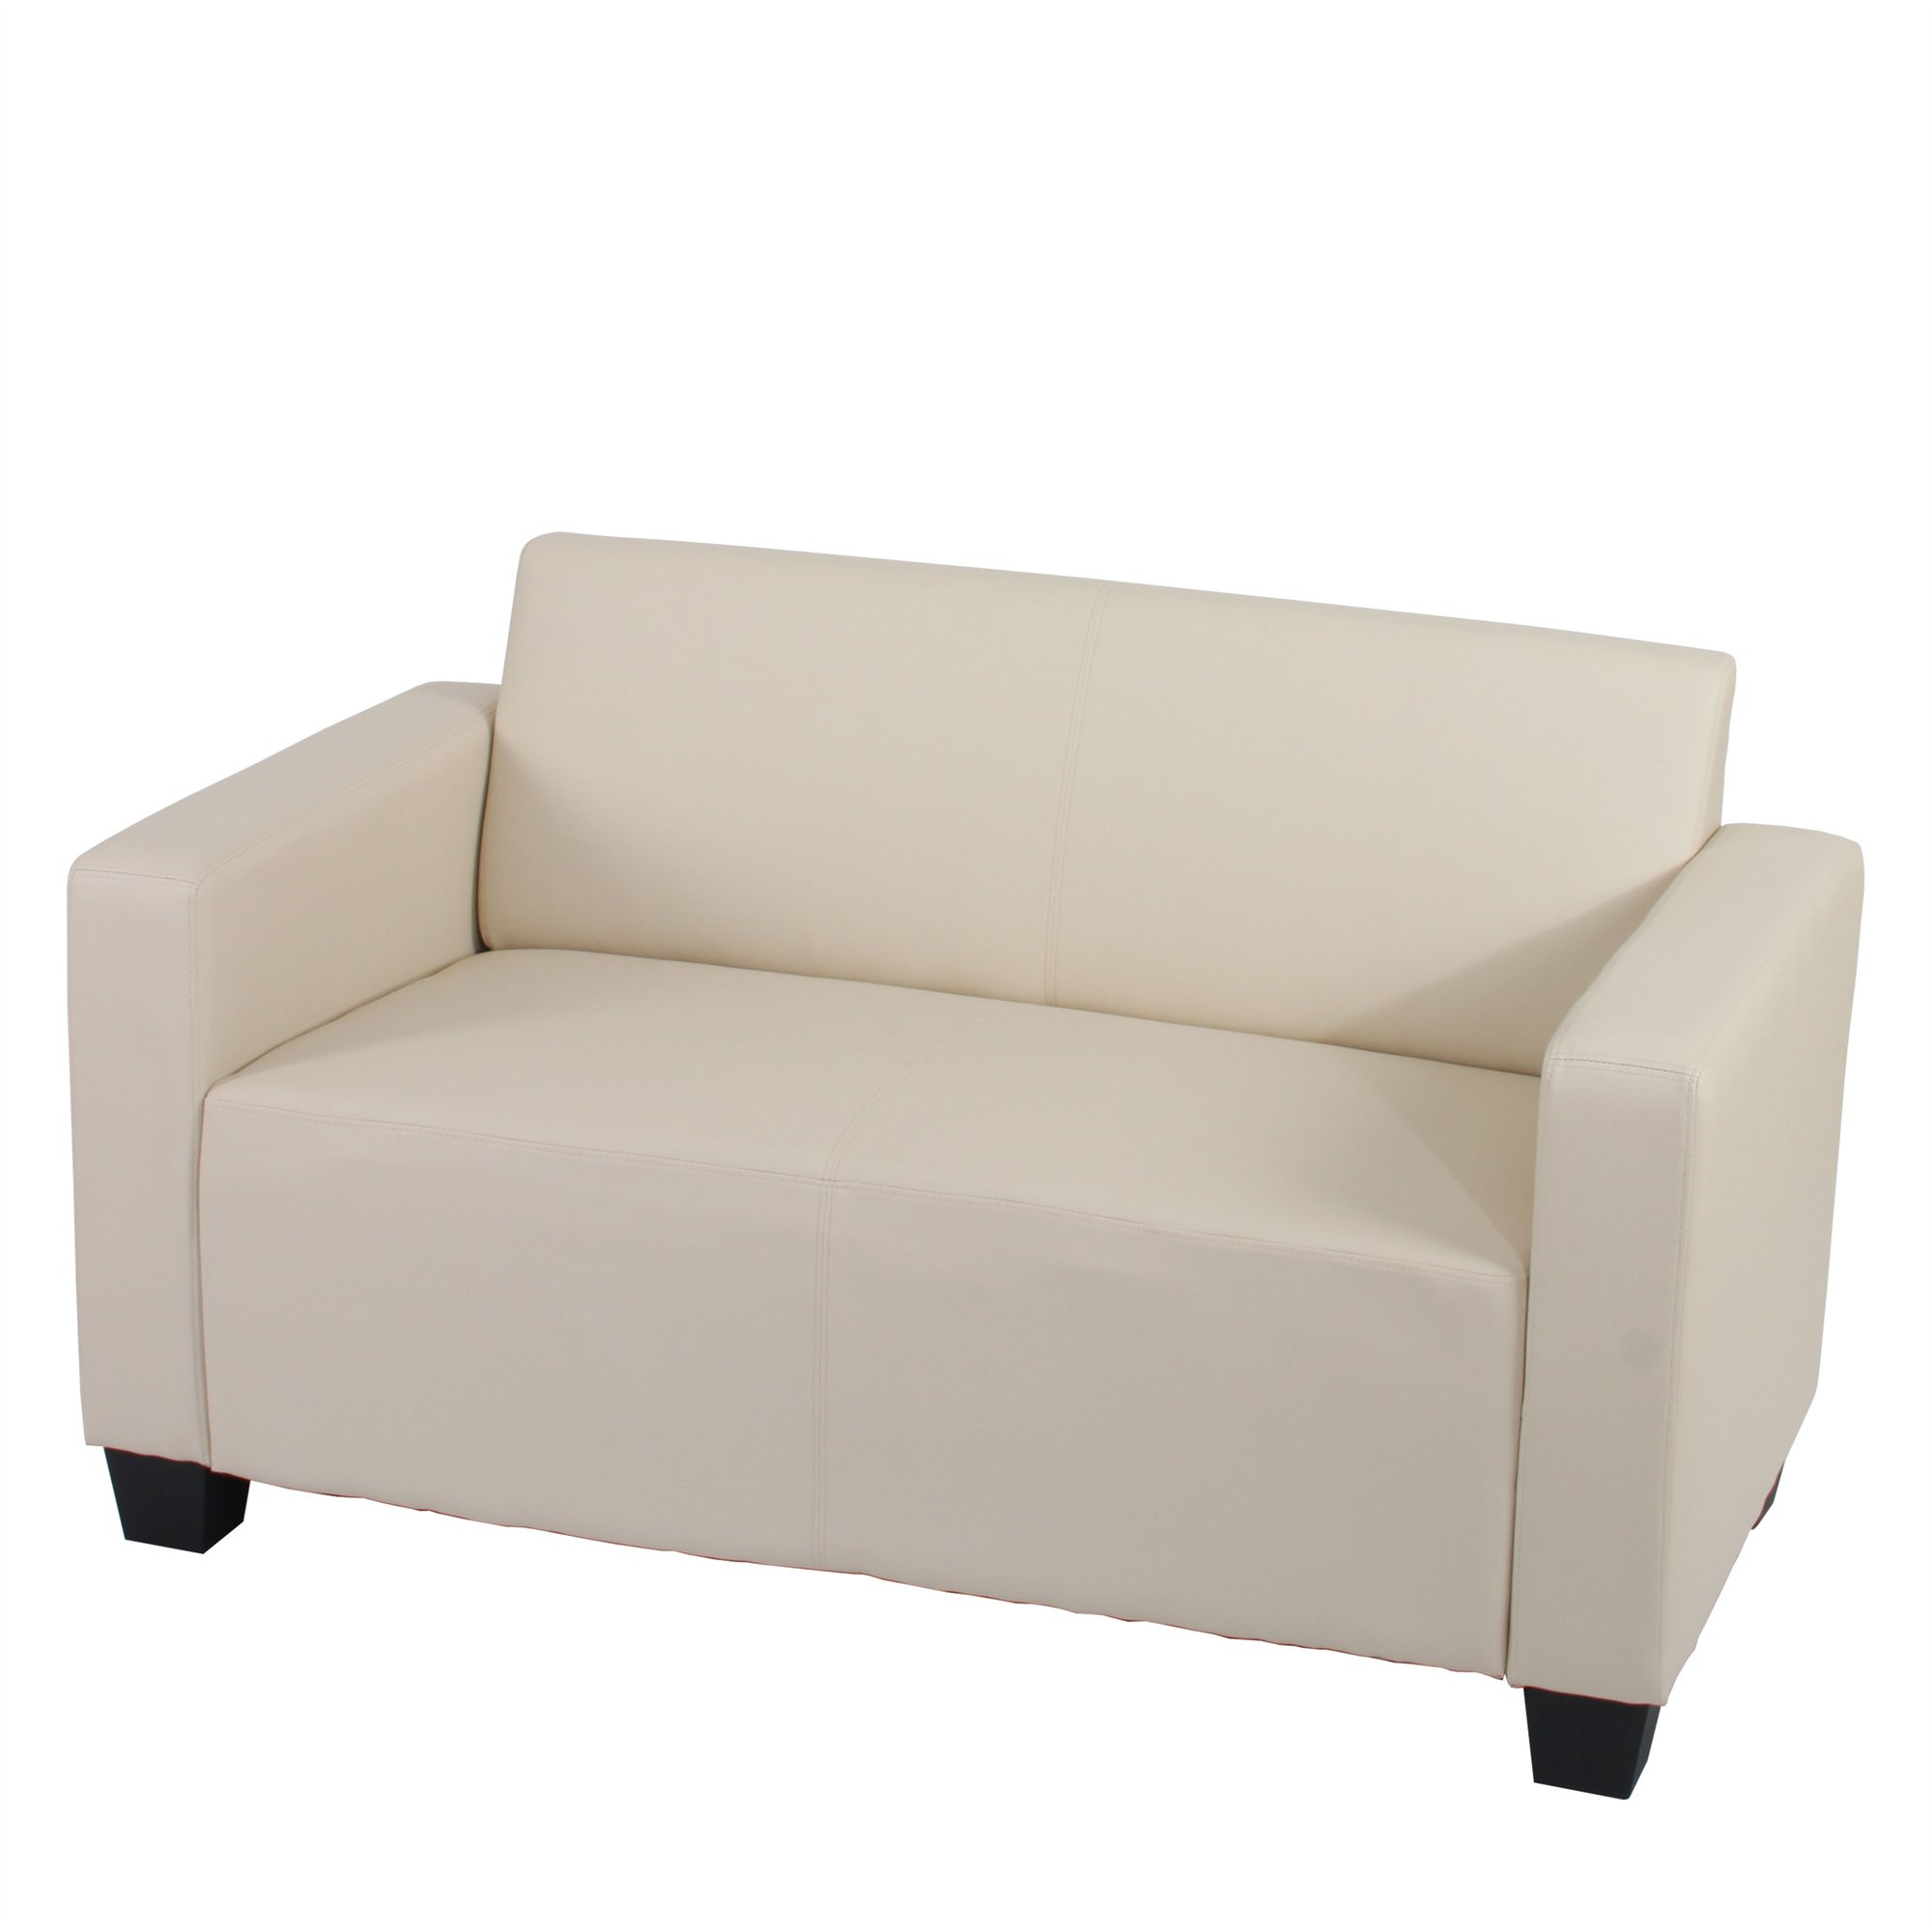 Sofa Modular LYON de 2 plazas, Gran acolchado, tapizado en piel color crema